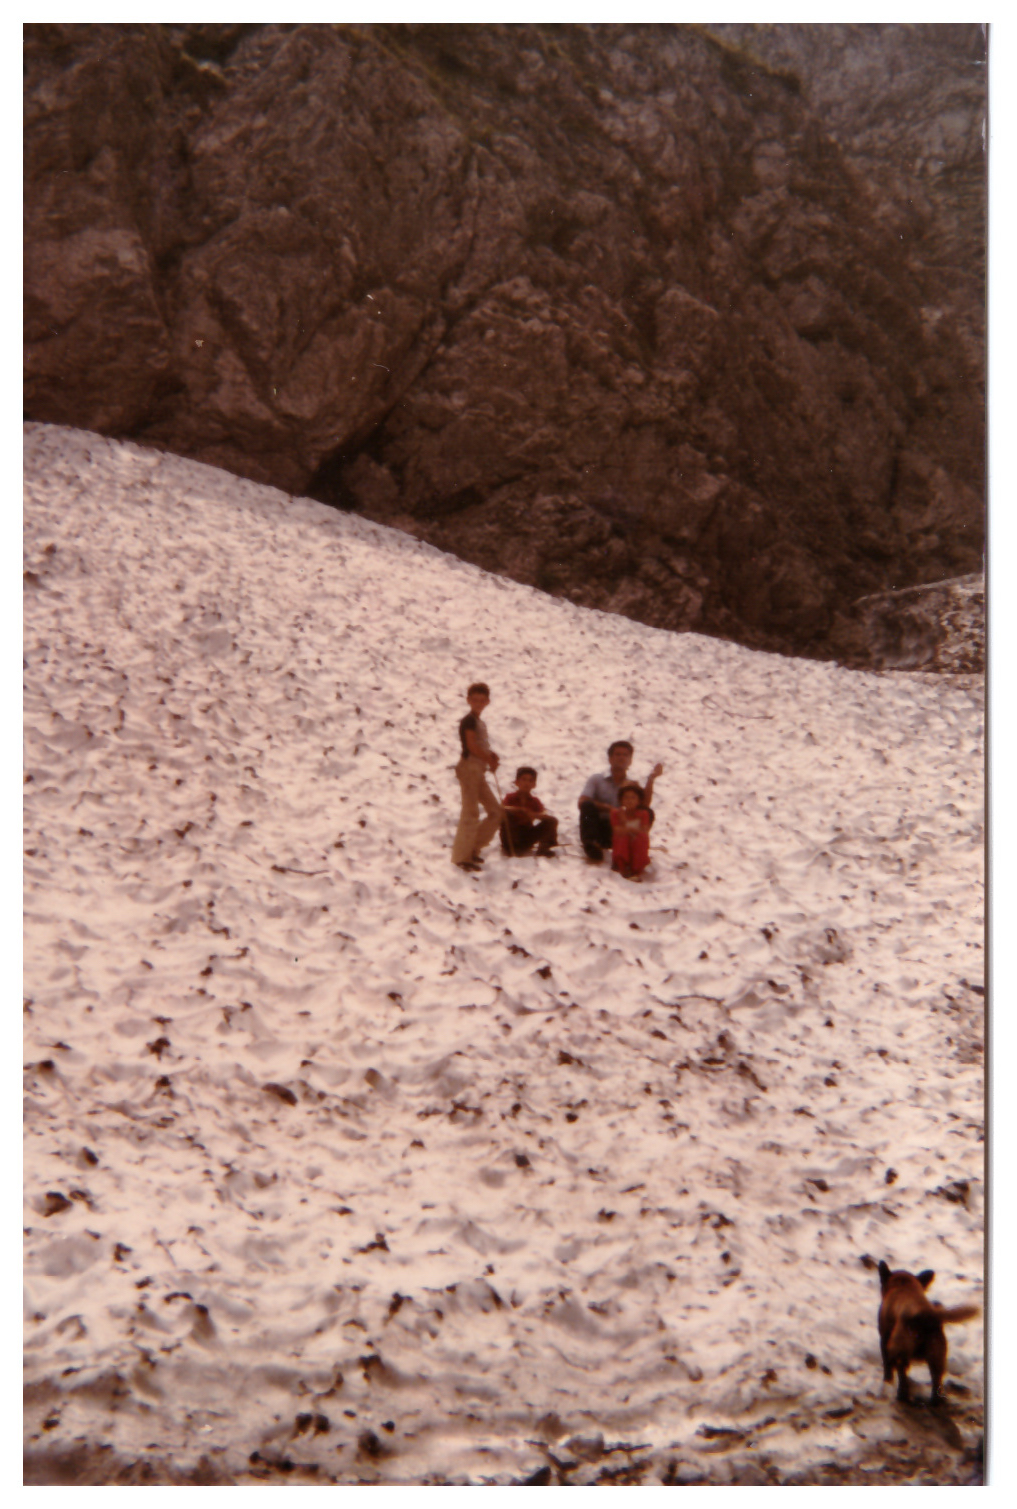 14 - Davide Verzoroli e fratelli sul Ghiacciaio della Val Las negli anni 80